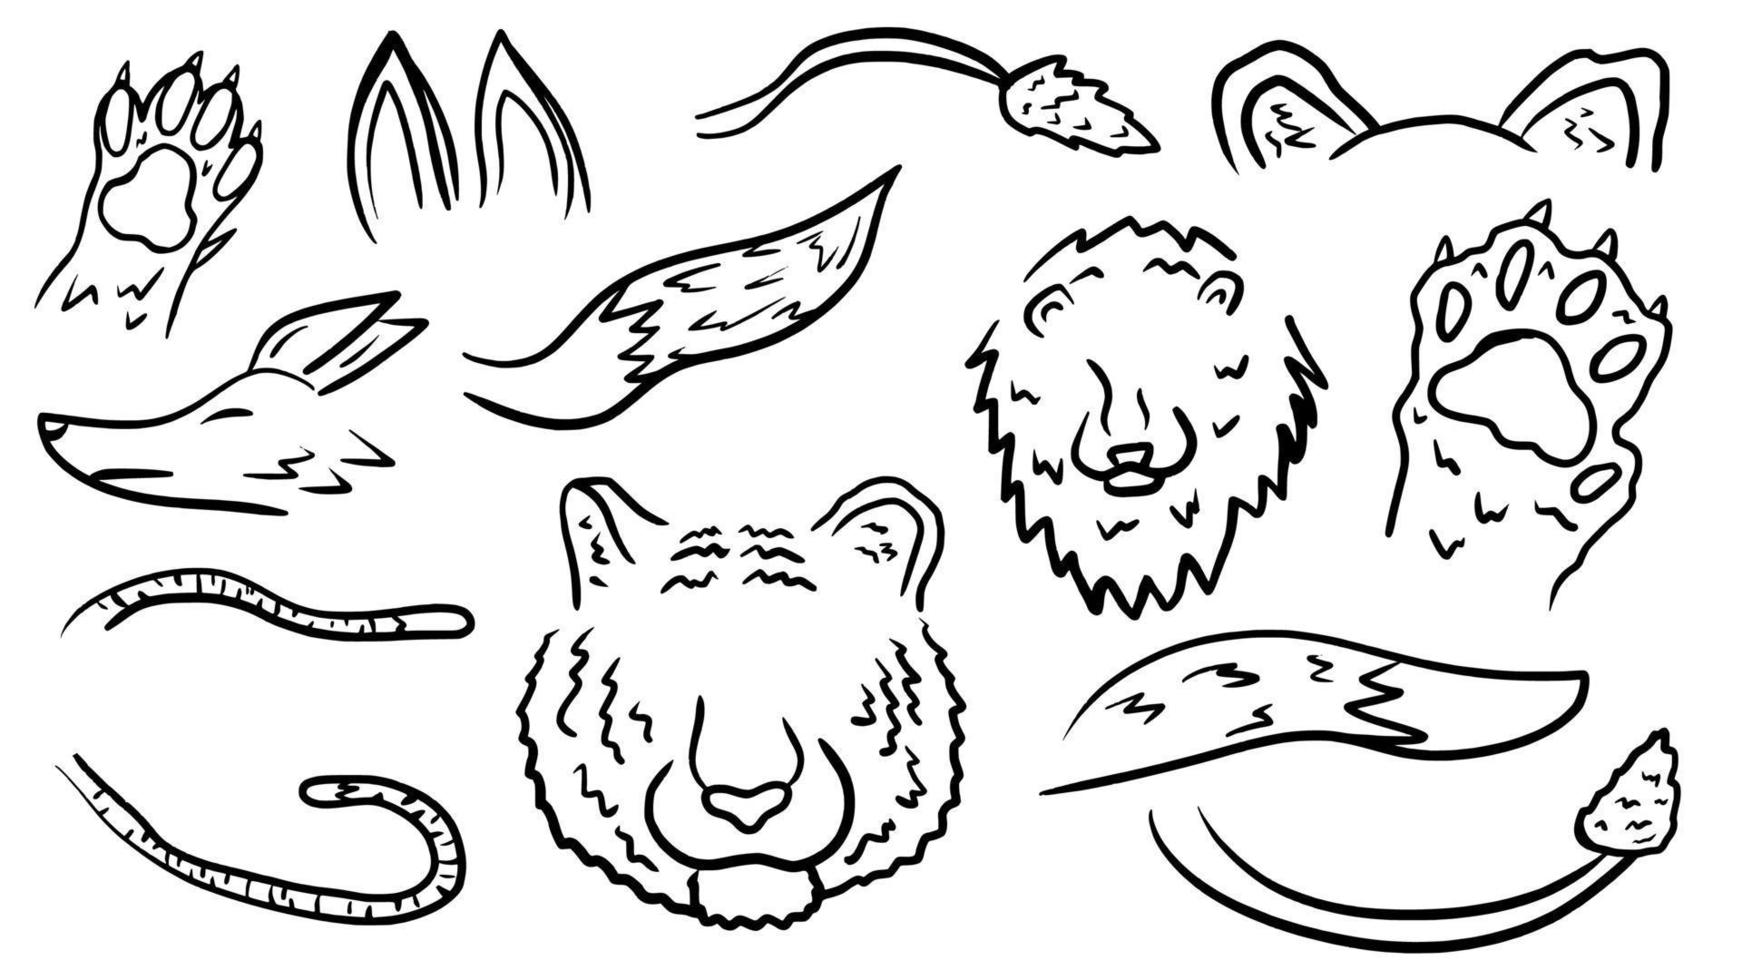 djur kroppsdel handritad doodle disposition vektor mall illustration samling för utbildning infographic och målarbok